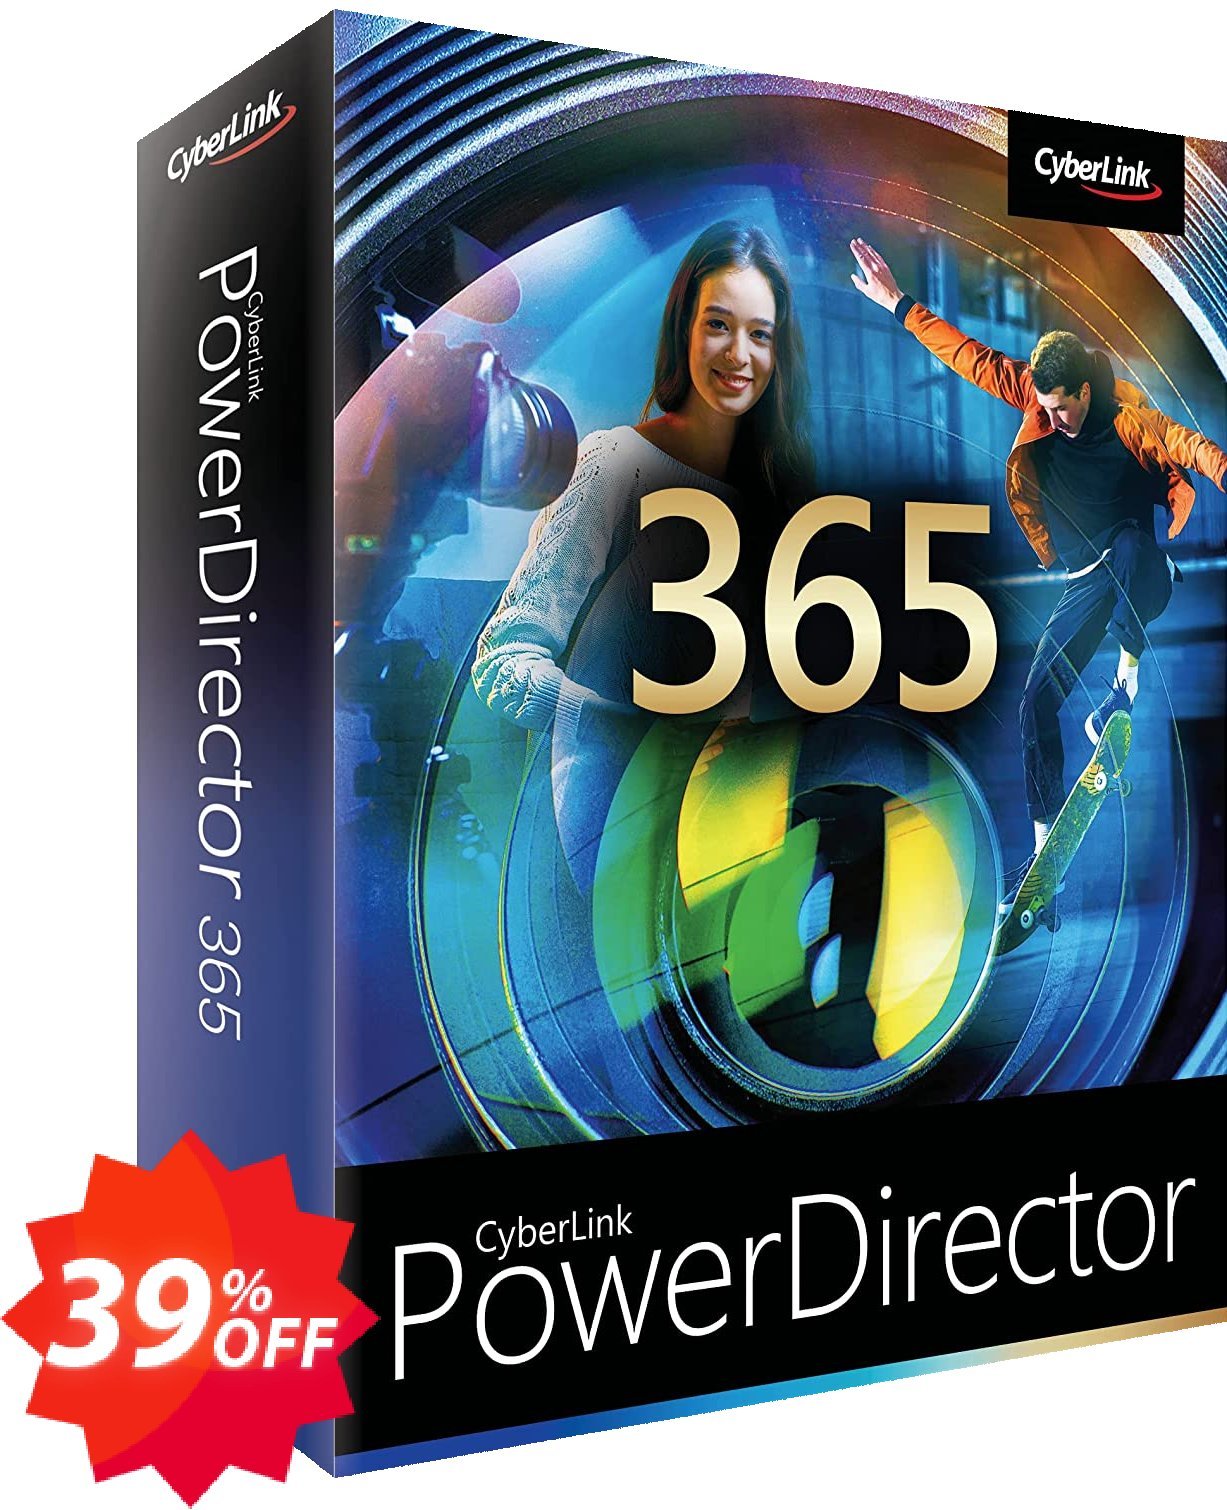 PowerDirector 365 - Monthly plan Coupon code 39% discount 